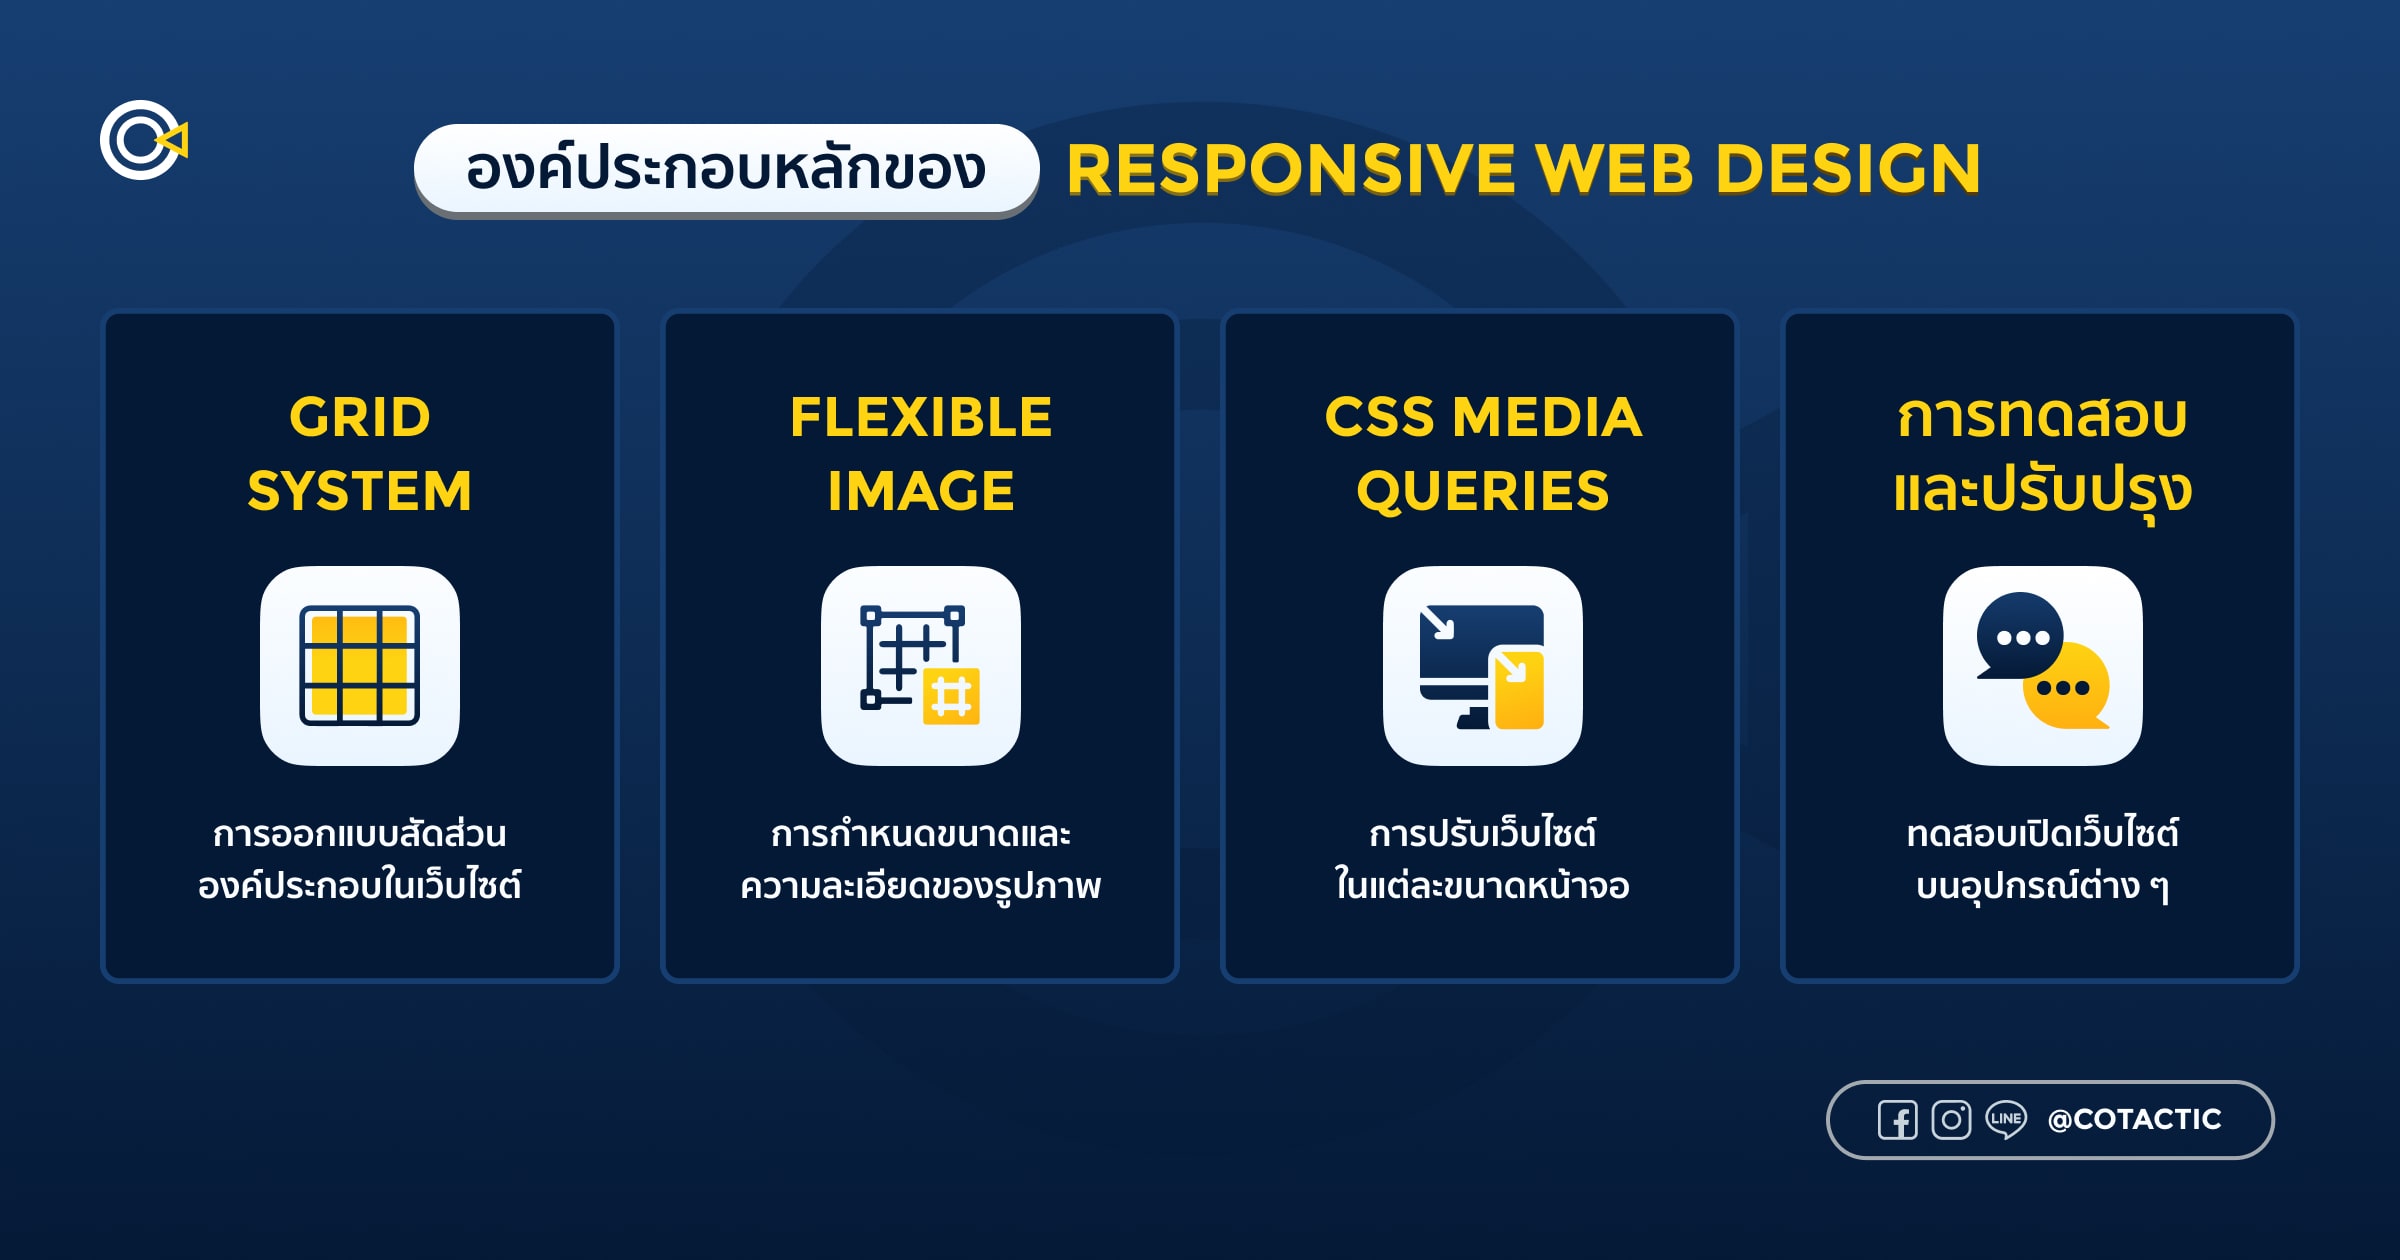 องค์ประกอบหลักของ Responsive Web Design